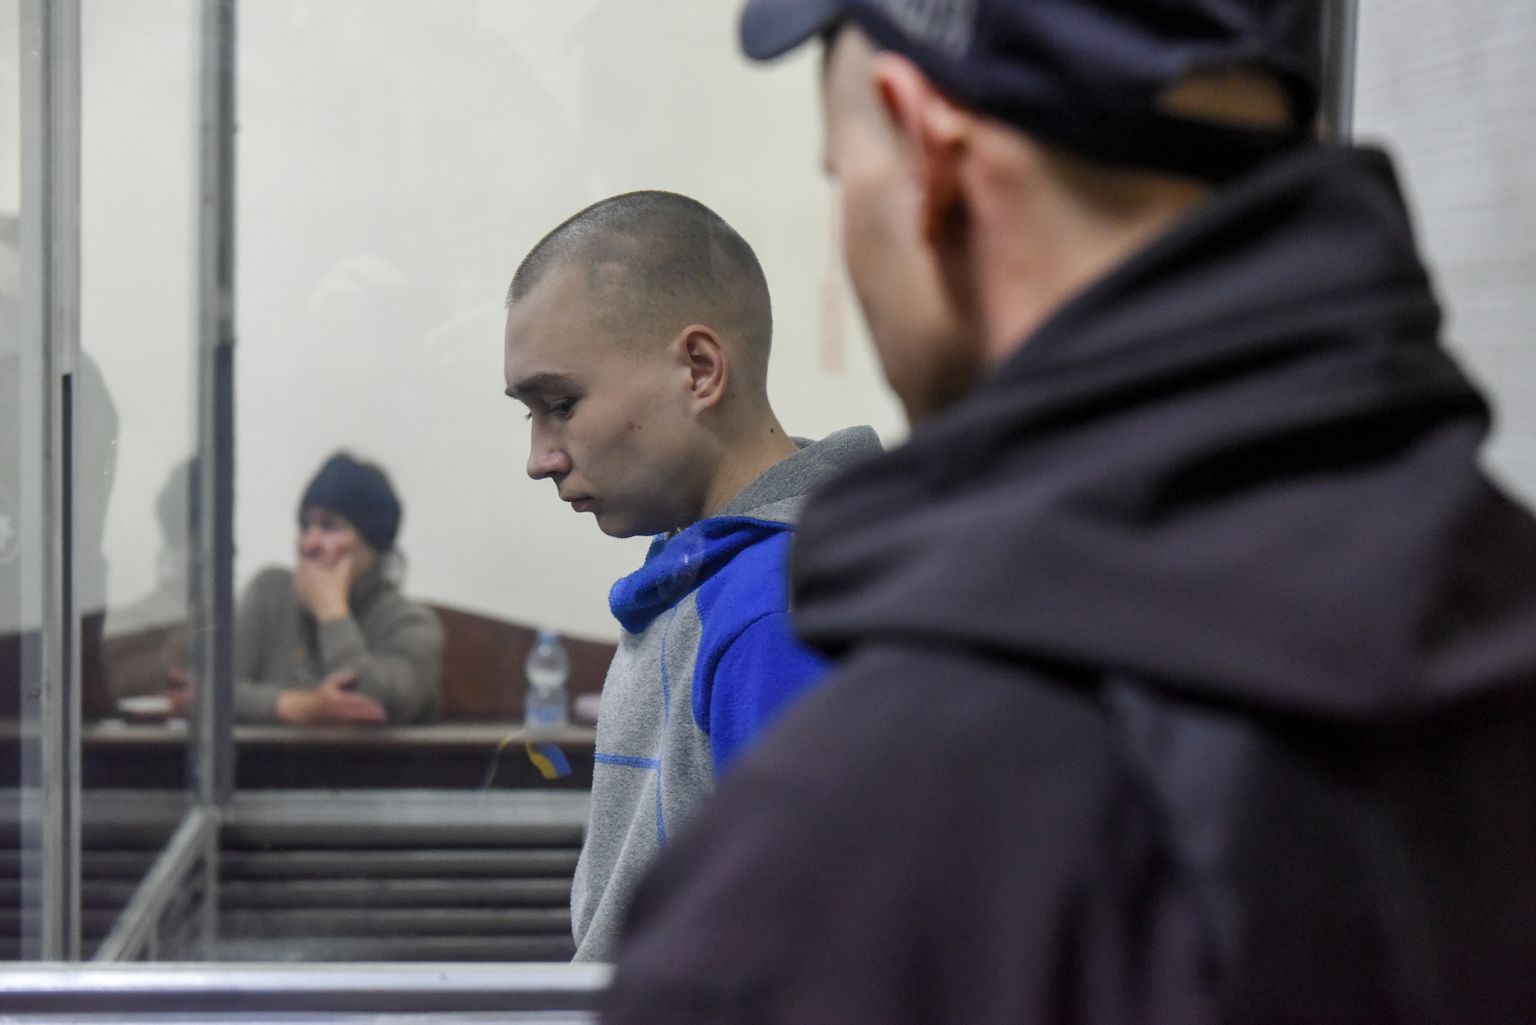 Tsiviilisiku tapmises süüdistatud Vene sõdur tunnistas end Kiievi kohtus süüdi